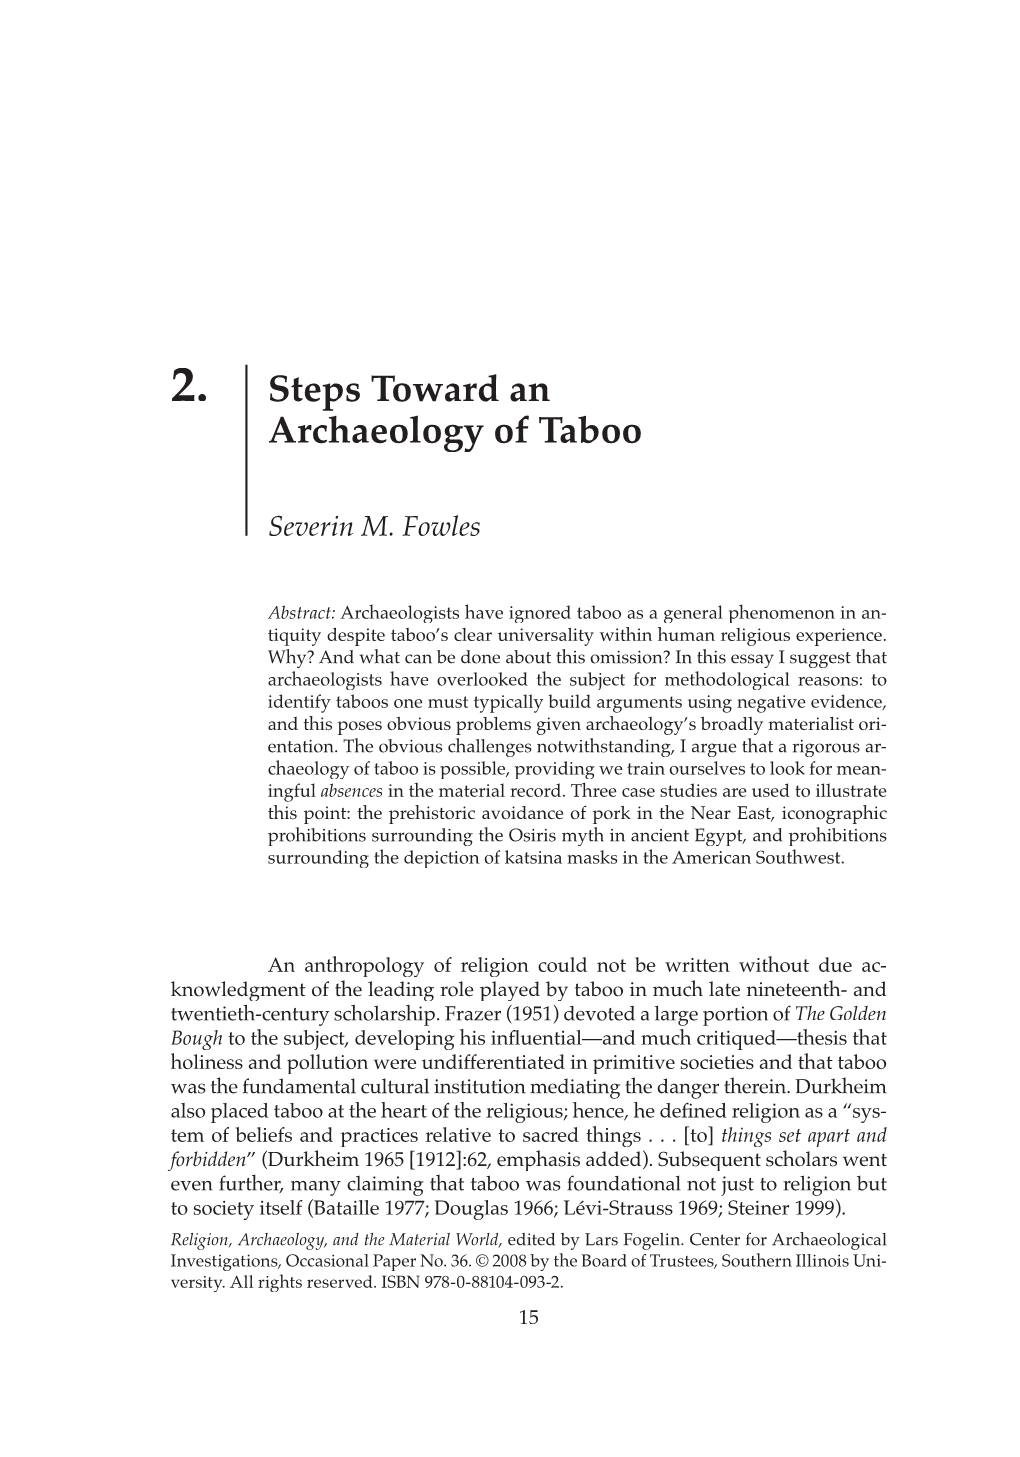 2. Steps Toward an Archaeology of Taboo